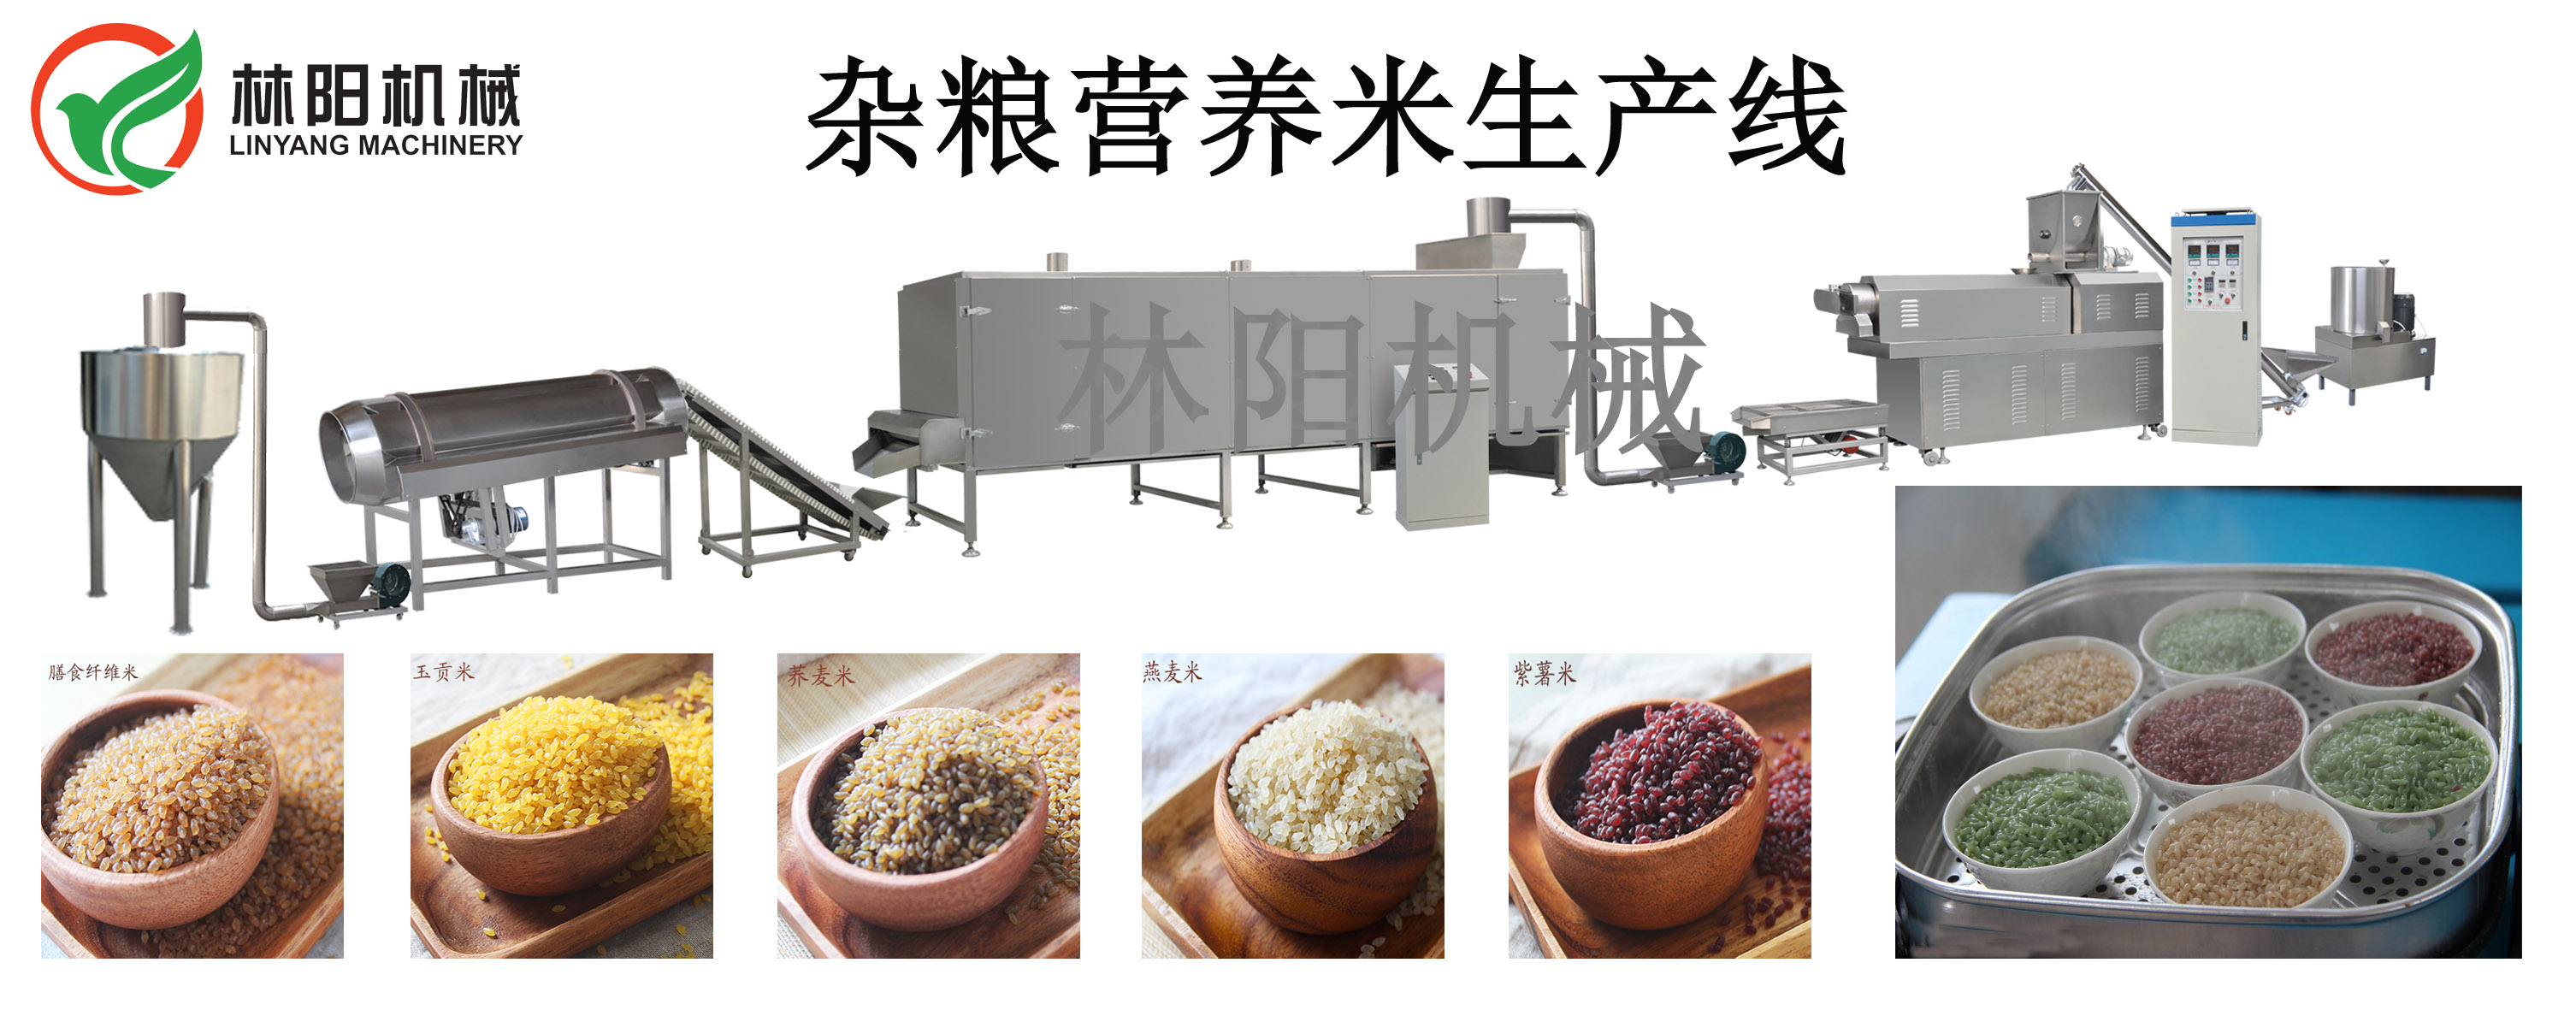 济南林阳机械脆锅巴生产设备多少钱_膨化休闲食品加工设备